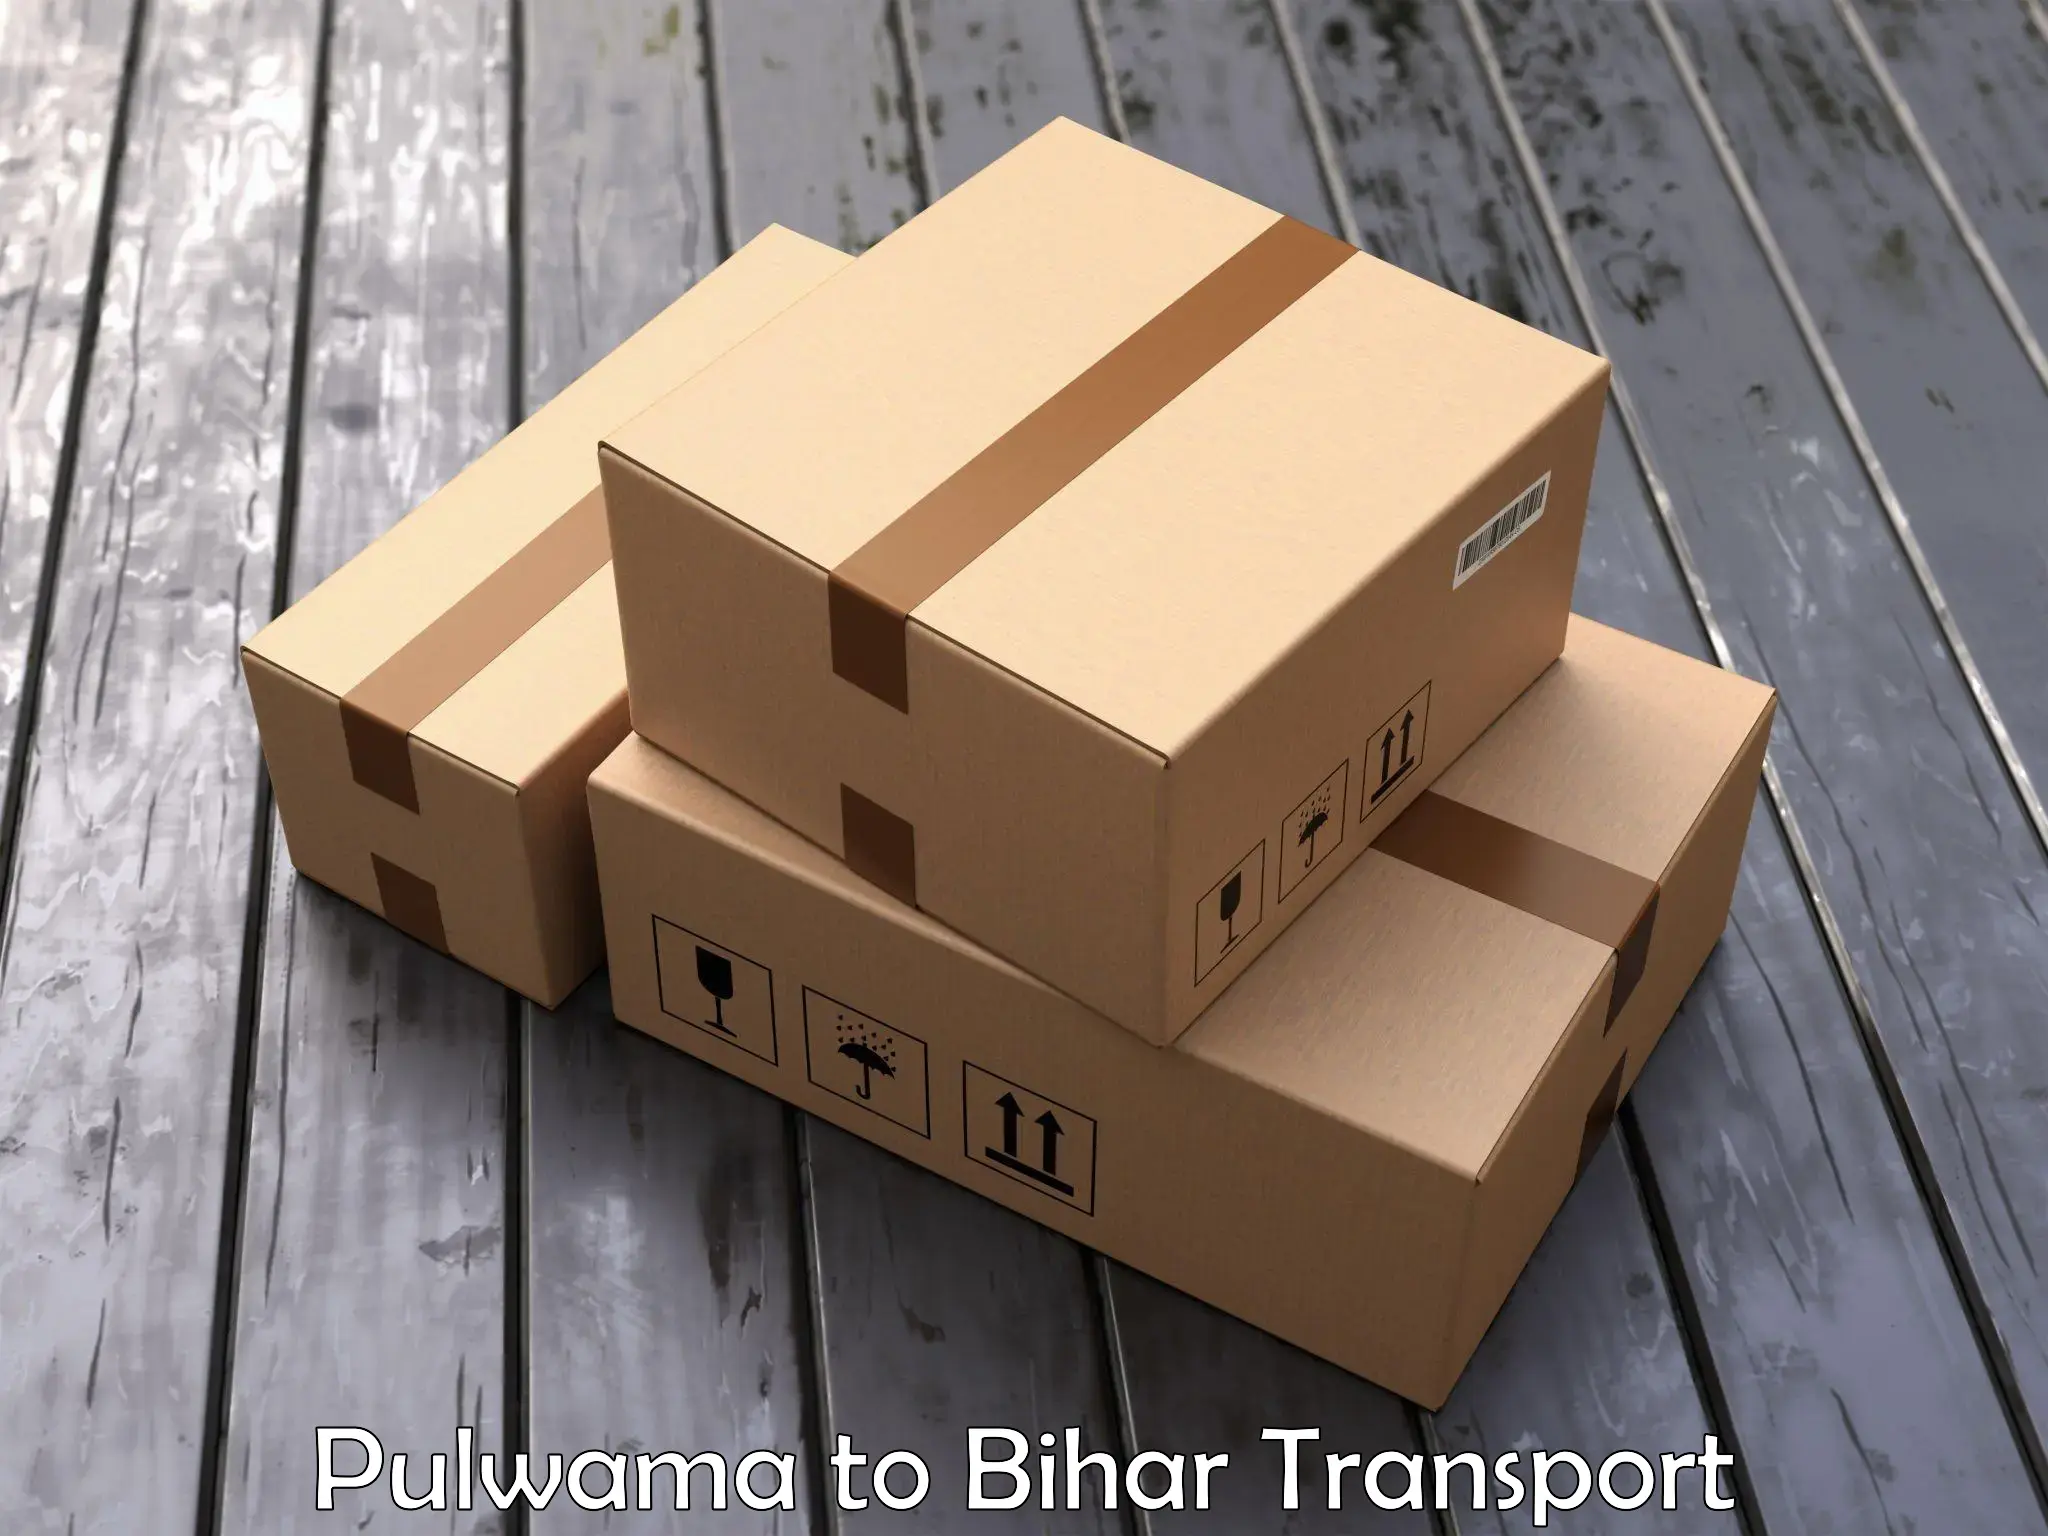 Goods delivery service Pulwama to Sheikhpura